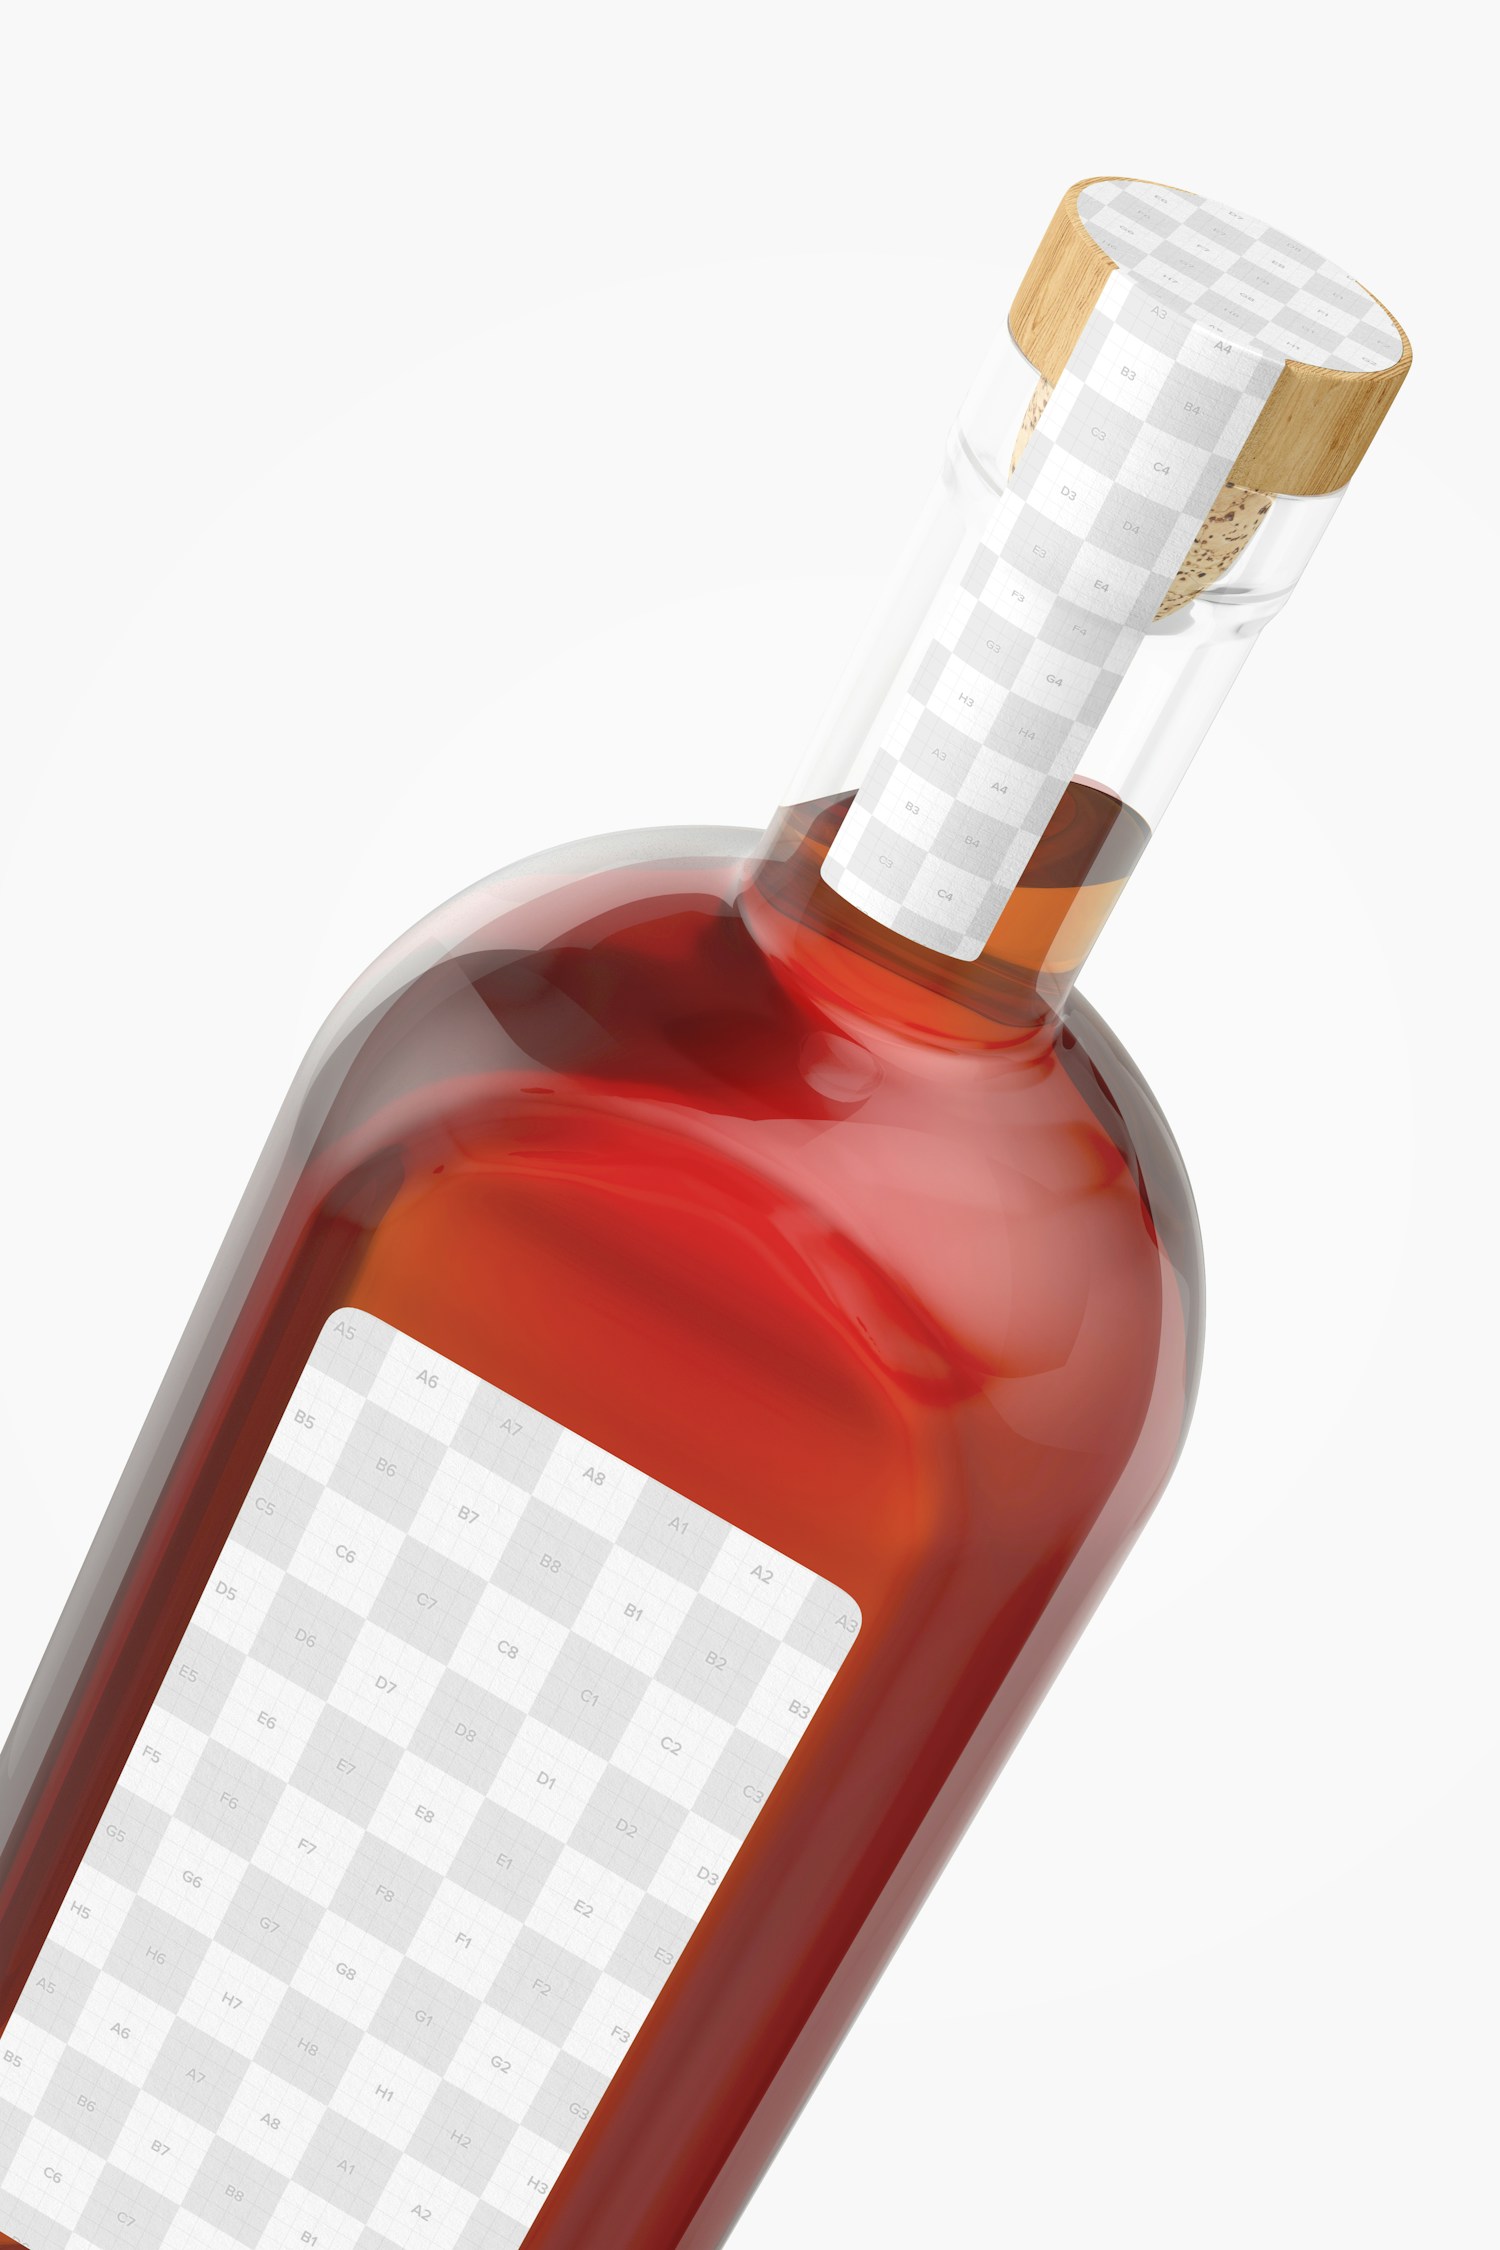 Whisky Bottle Mockup, Close-Up